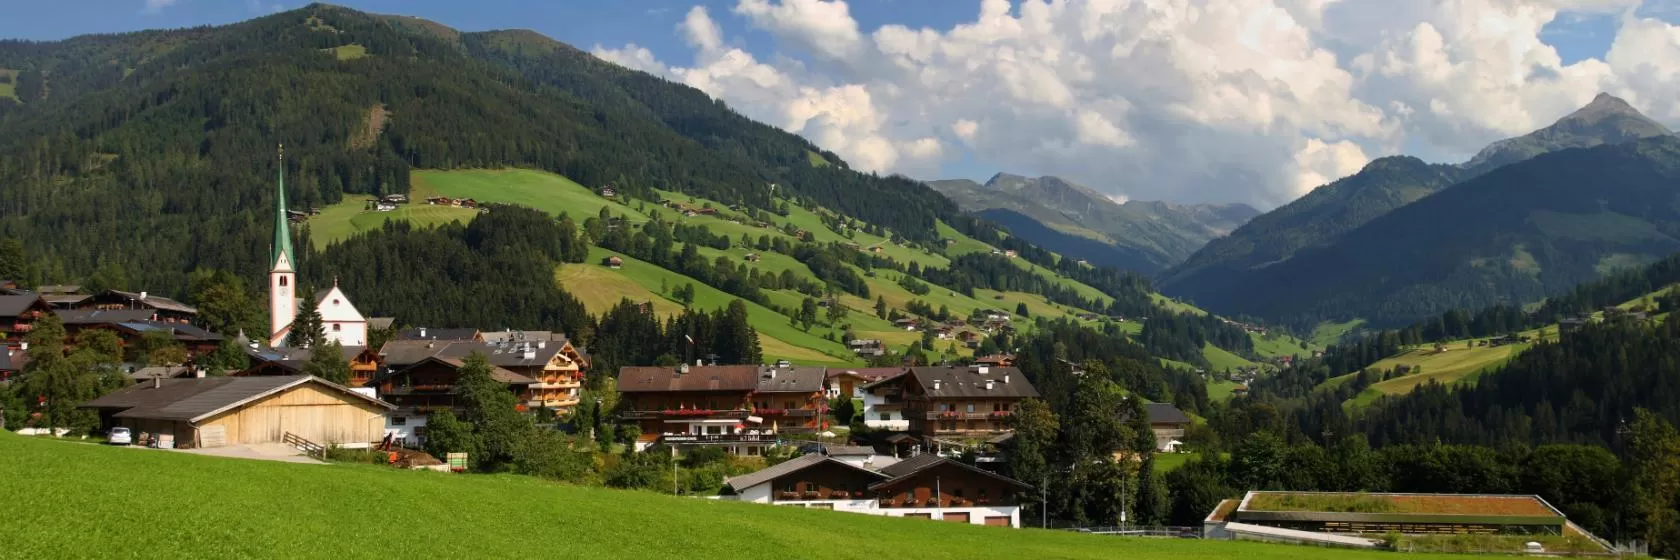 Alpbach, Tyrol Hotels